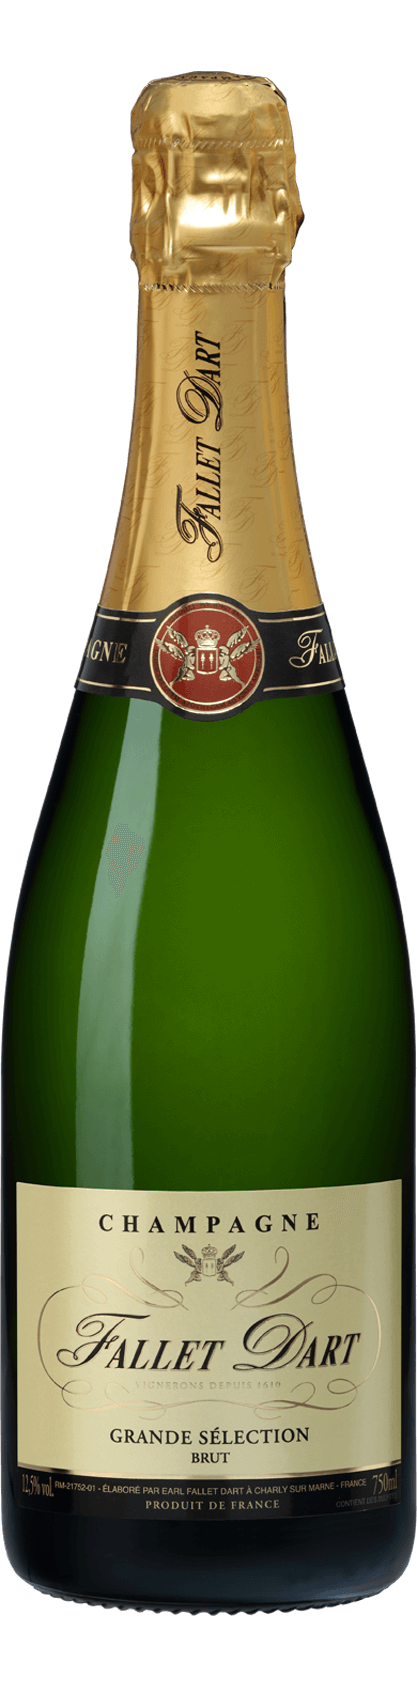 Grande Sélection Brut - Champagne Fallet Dart